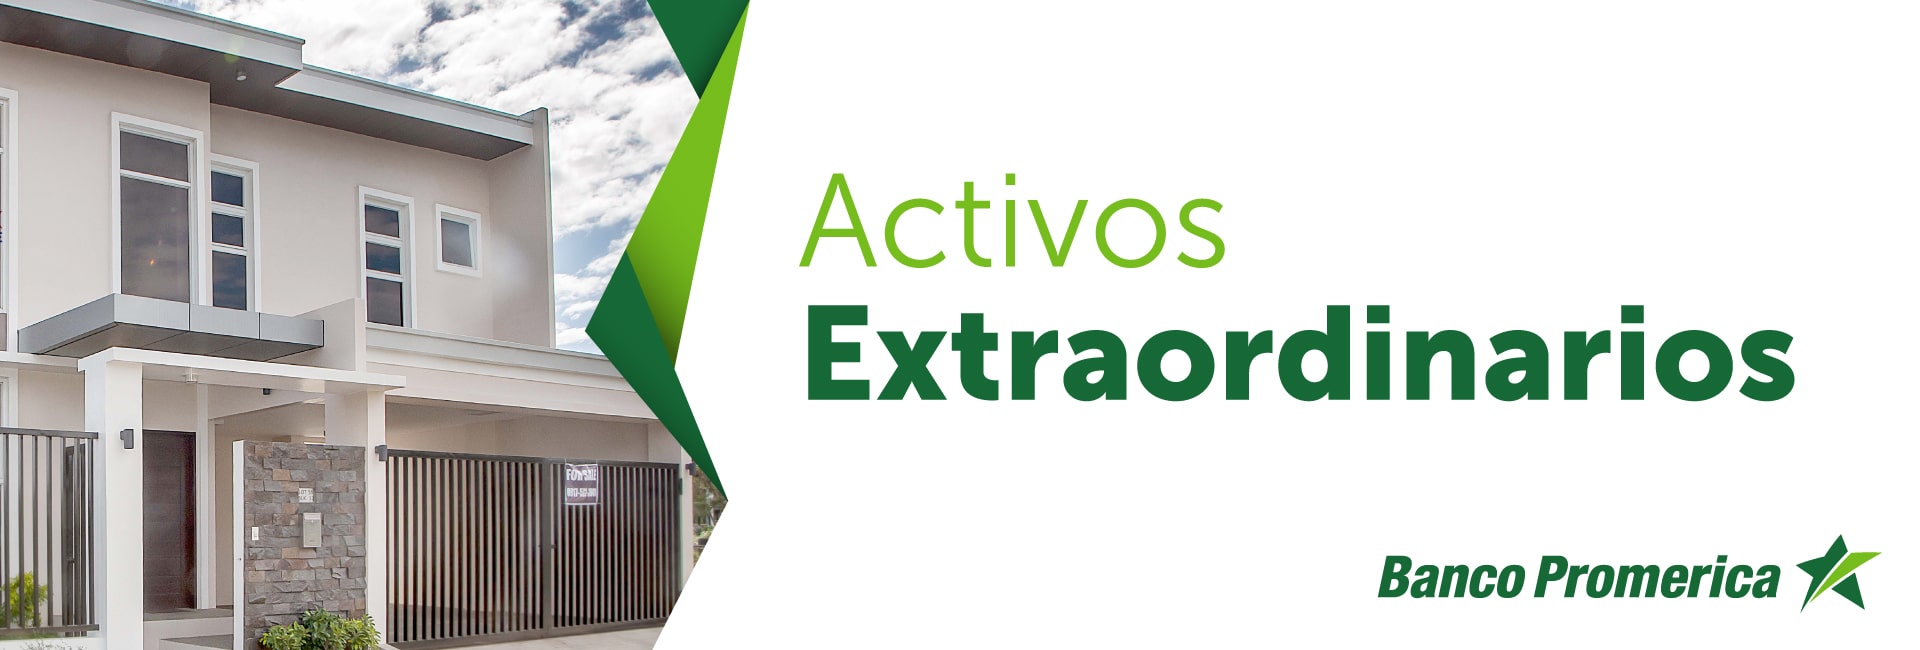 ACTIVOS EXTRAORDINARIOS 01 Min